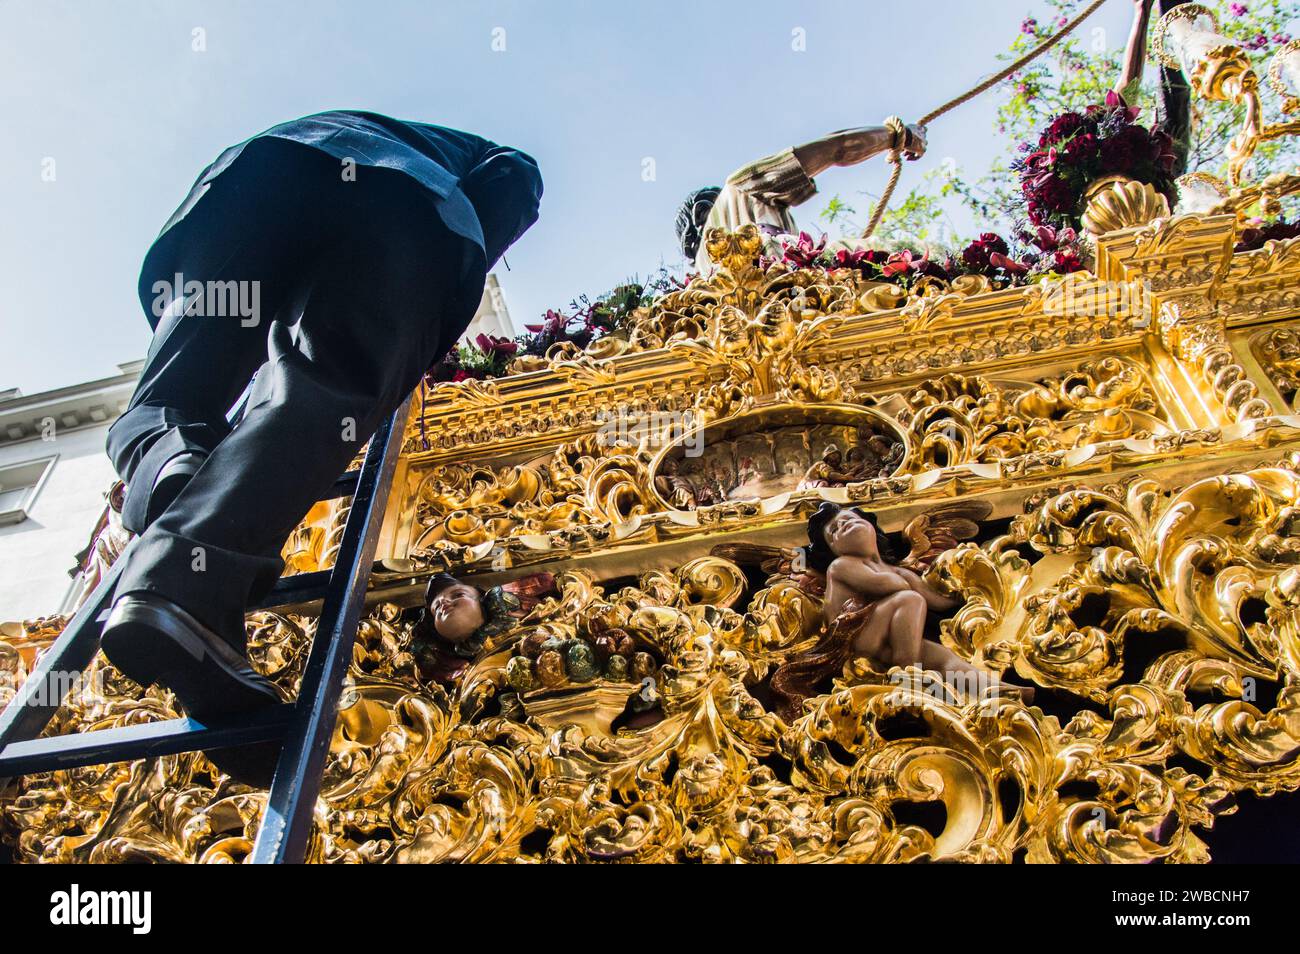 Der Gläubige steigt eine Leiter auf dem kunstvoll verzierten Festzug in Sevilla hinauf, der mit aufwändig geschnitzten Holzblättern und glitzerndem Blattgold geschmückt ist. Stockfoto